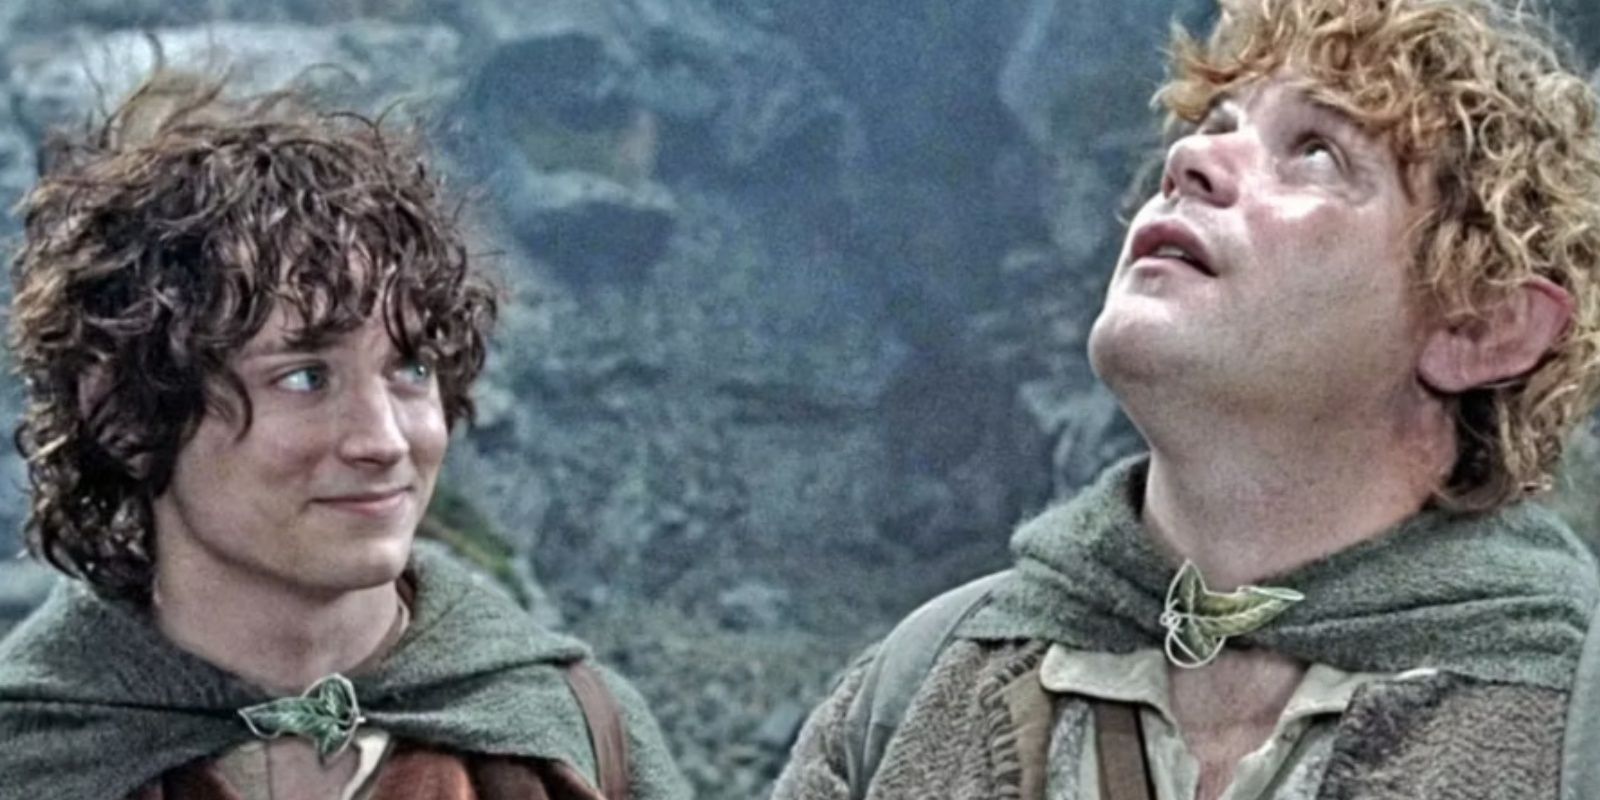 Elijah Wood as Frodo Baggins. Sean Astin as Samwise Gamgee.